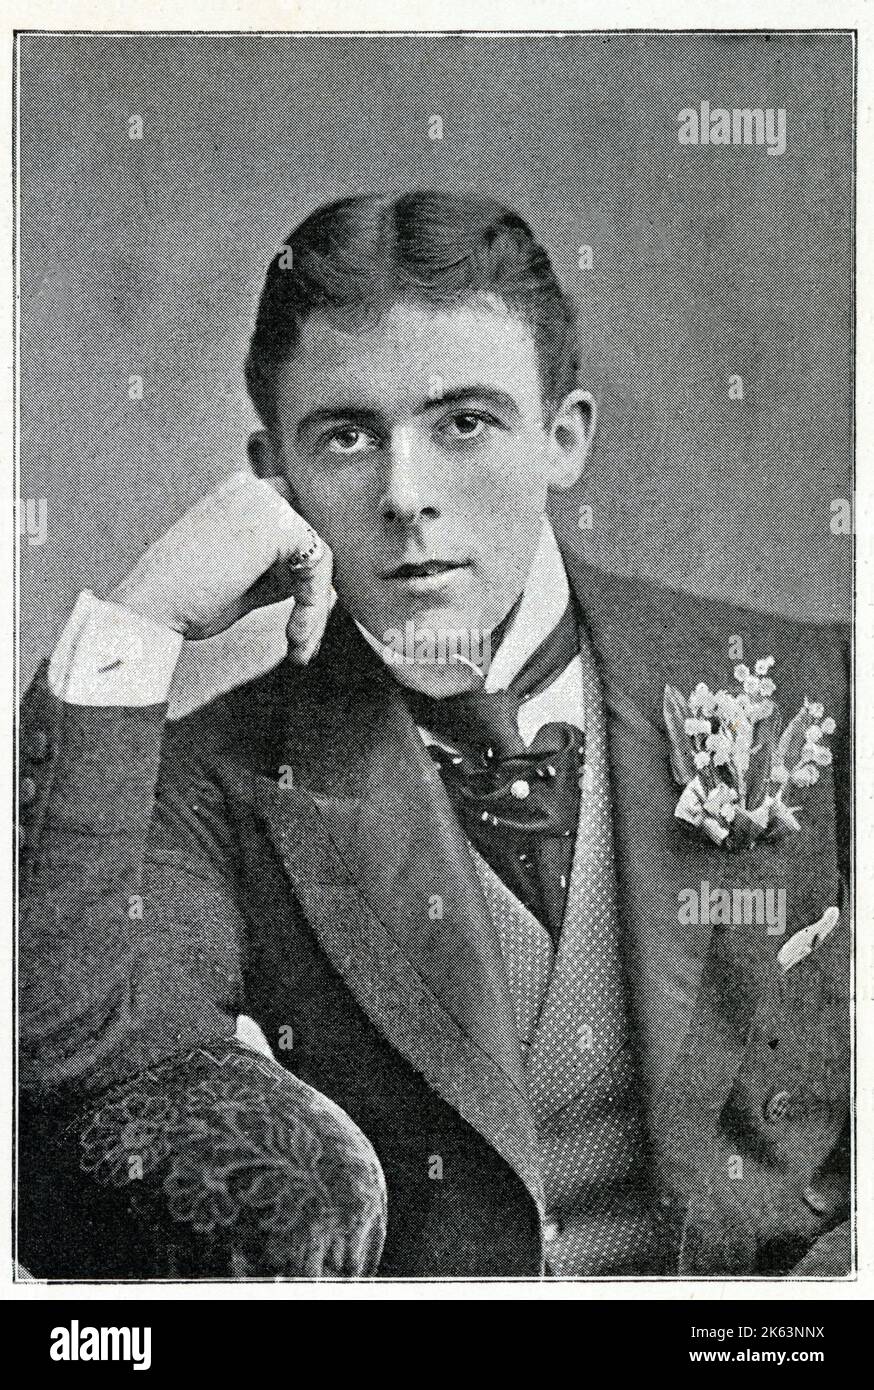 SEYMOUR HICKS (Sir Edward Seymour Hicks) (1871 - 1949), englischer Schauspieler-Manager und Dramatiker. Stockfoto